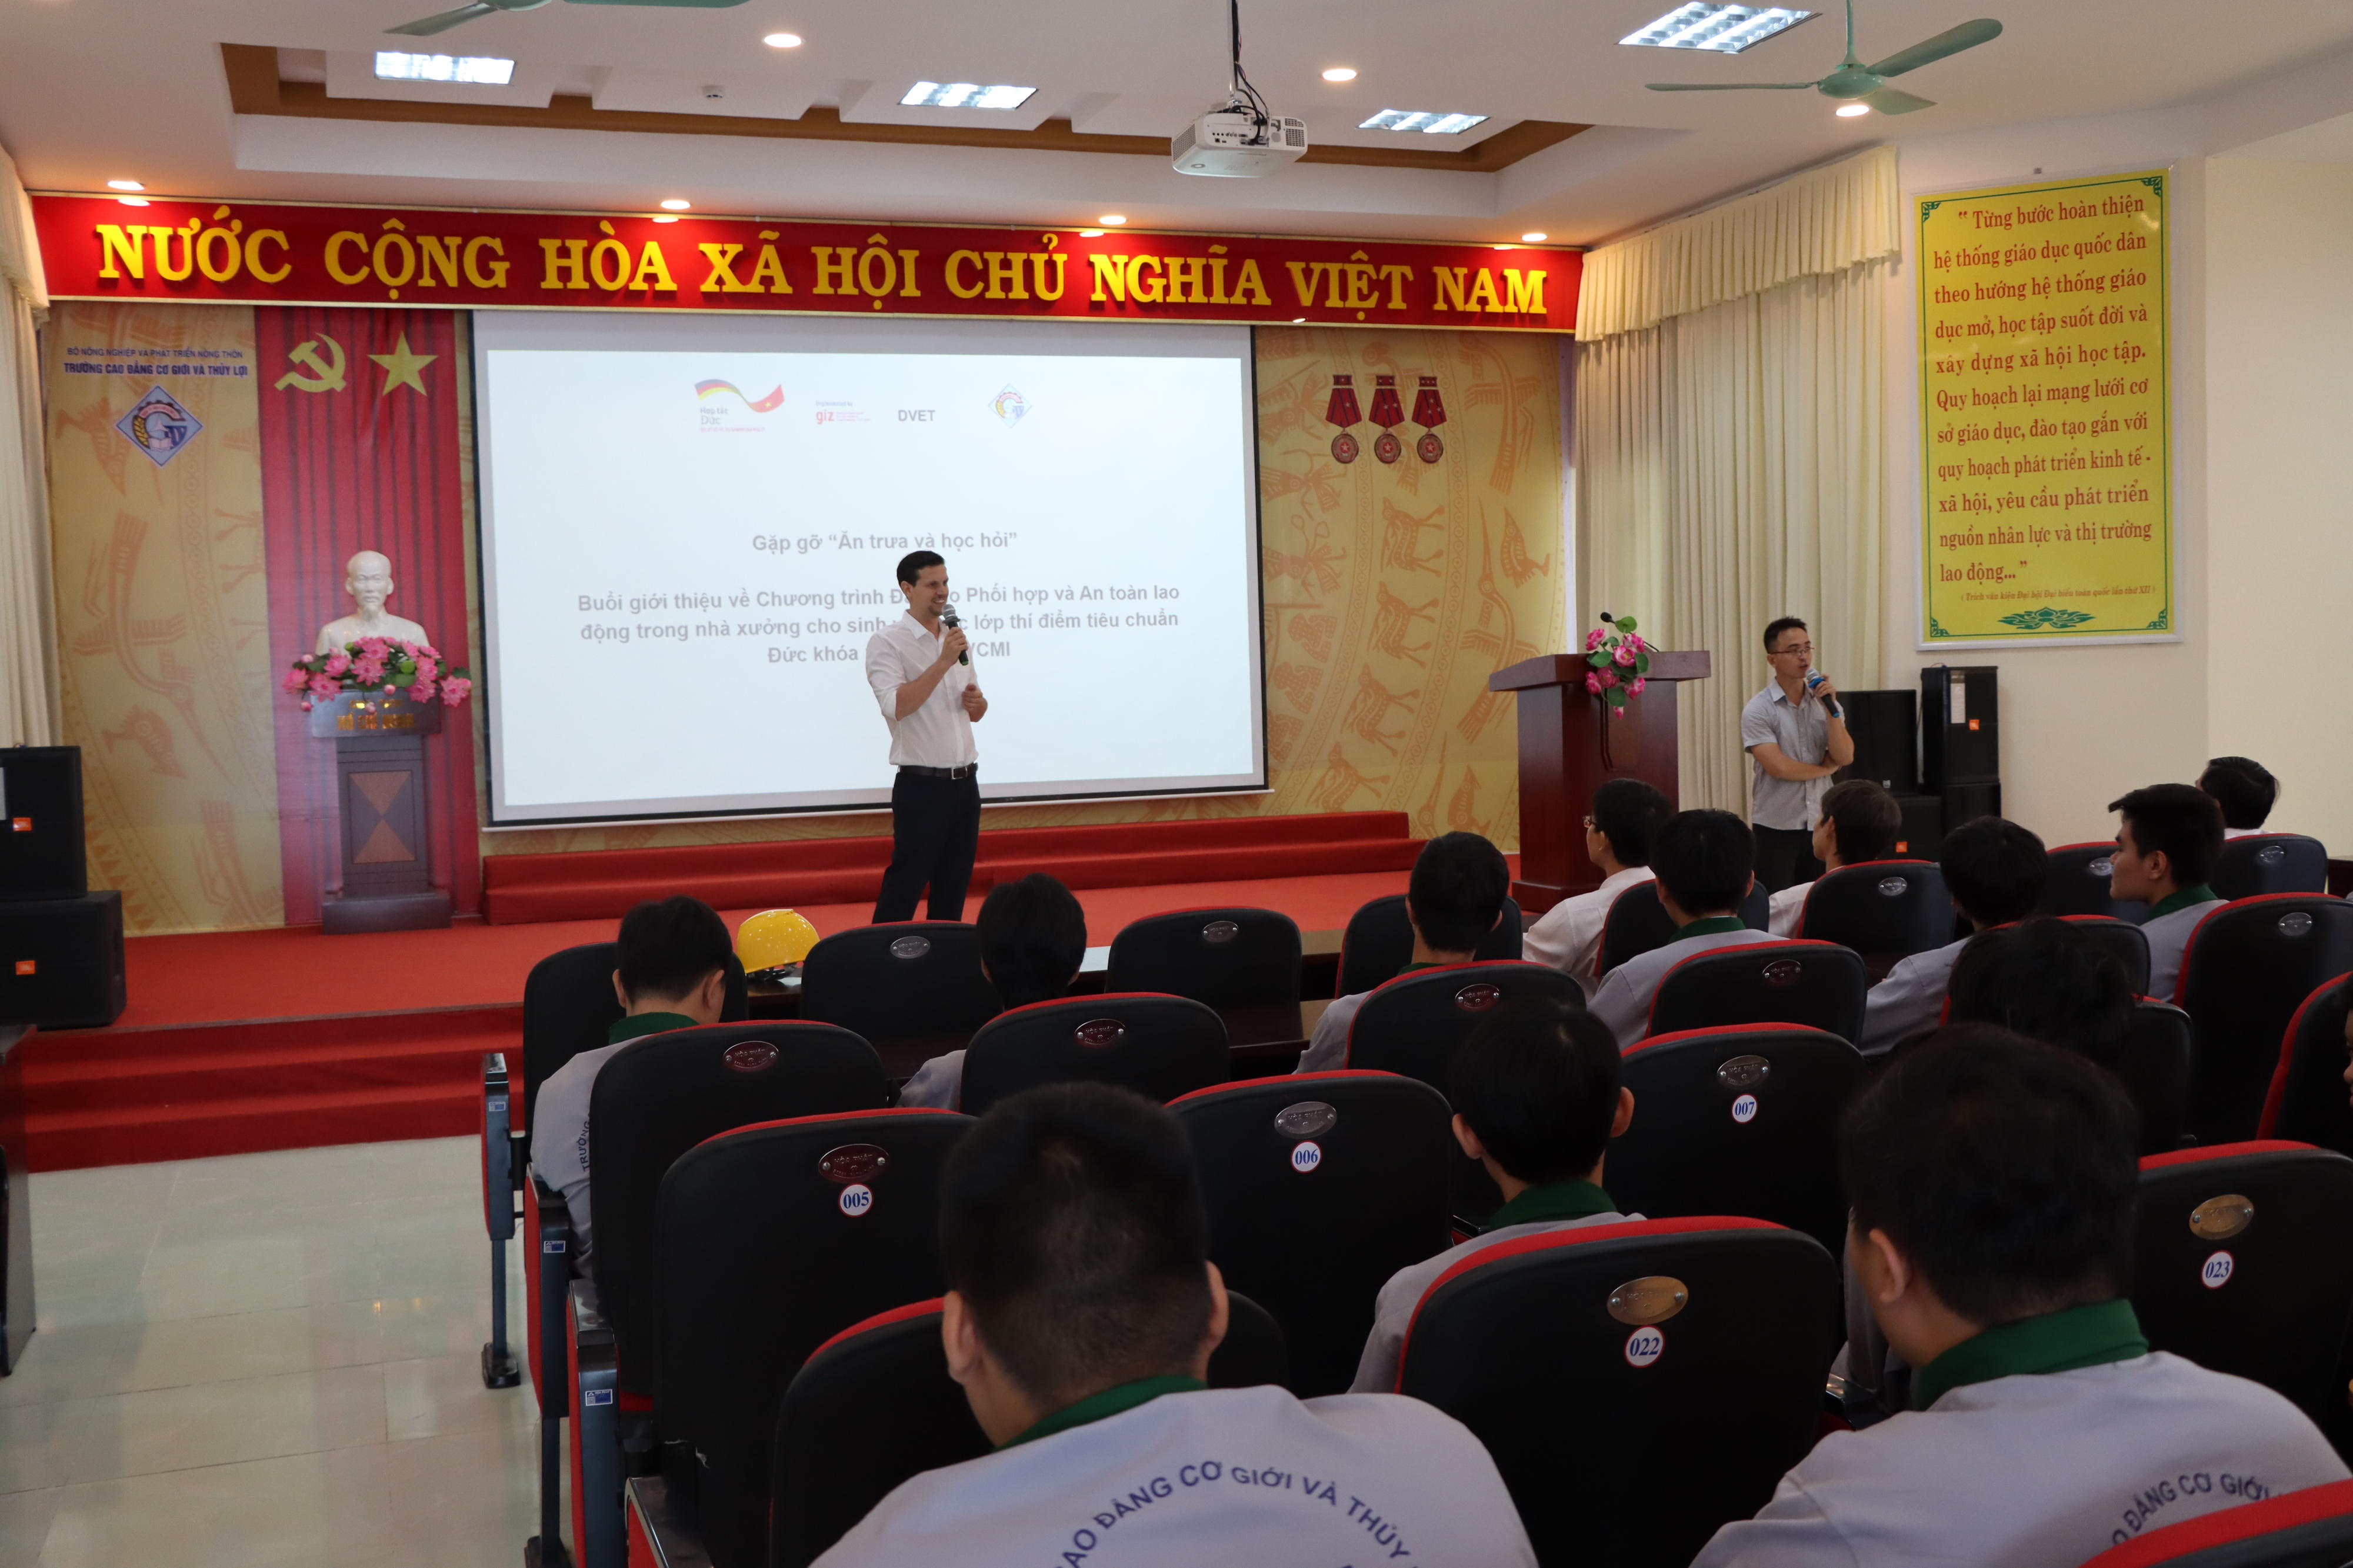 Arbeitssicherheitsunterweisung durch Ruben Ziehler für alle Schüler der GIZ-Klassen, 2021, Provinz Dong Nai, Vietnam